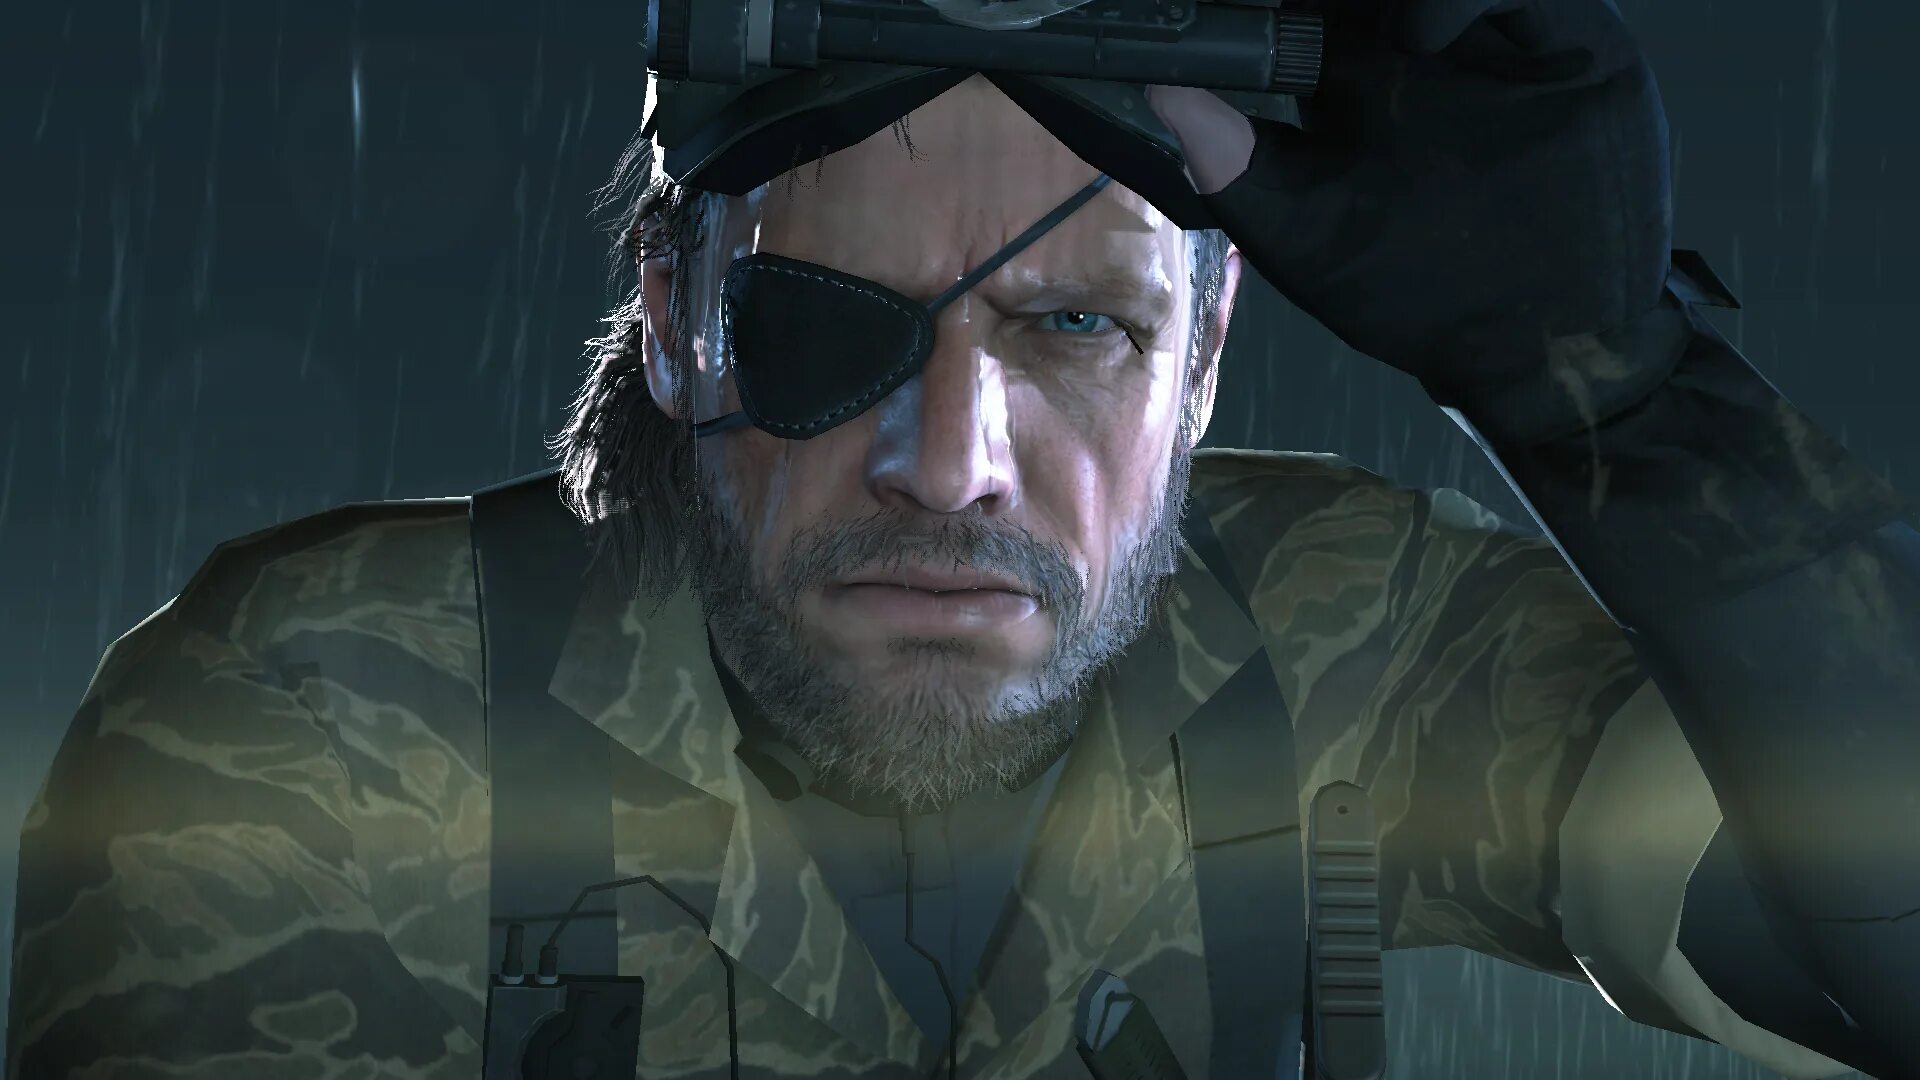 Биг босс Metal Gear 5 ground Zeroes. MGS 5 ground Zeroes Снейк. Солид Снейк. Metal Gear Solid 6. Слушать биг босса